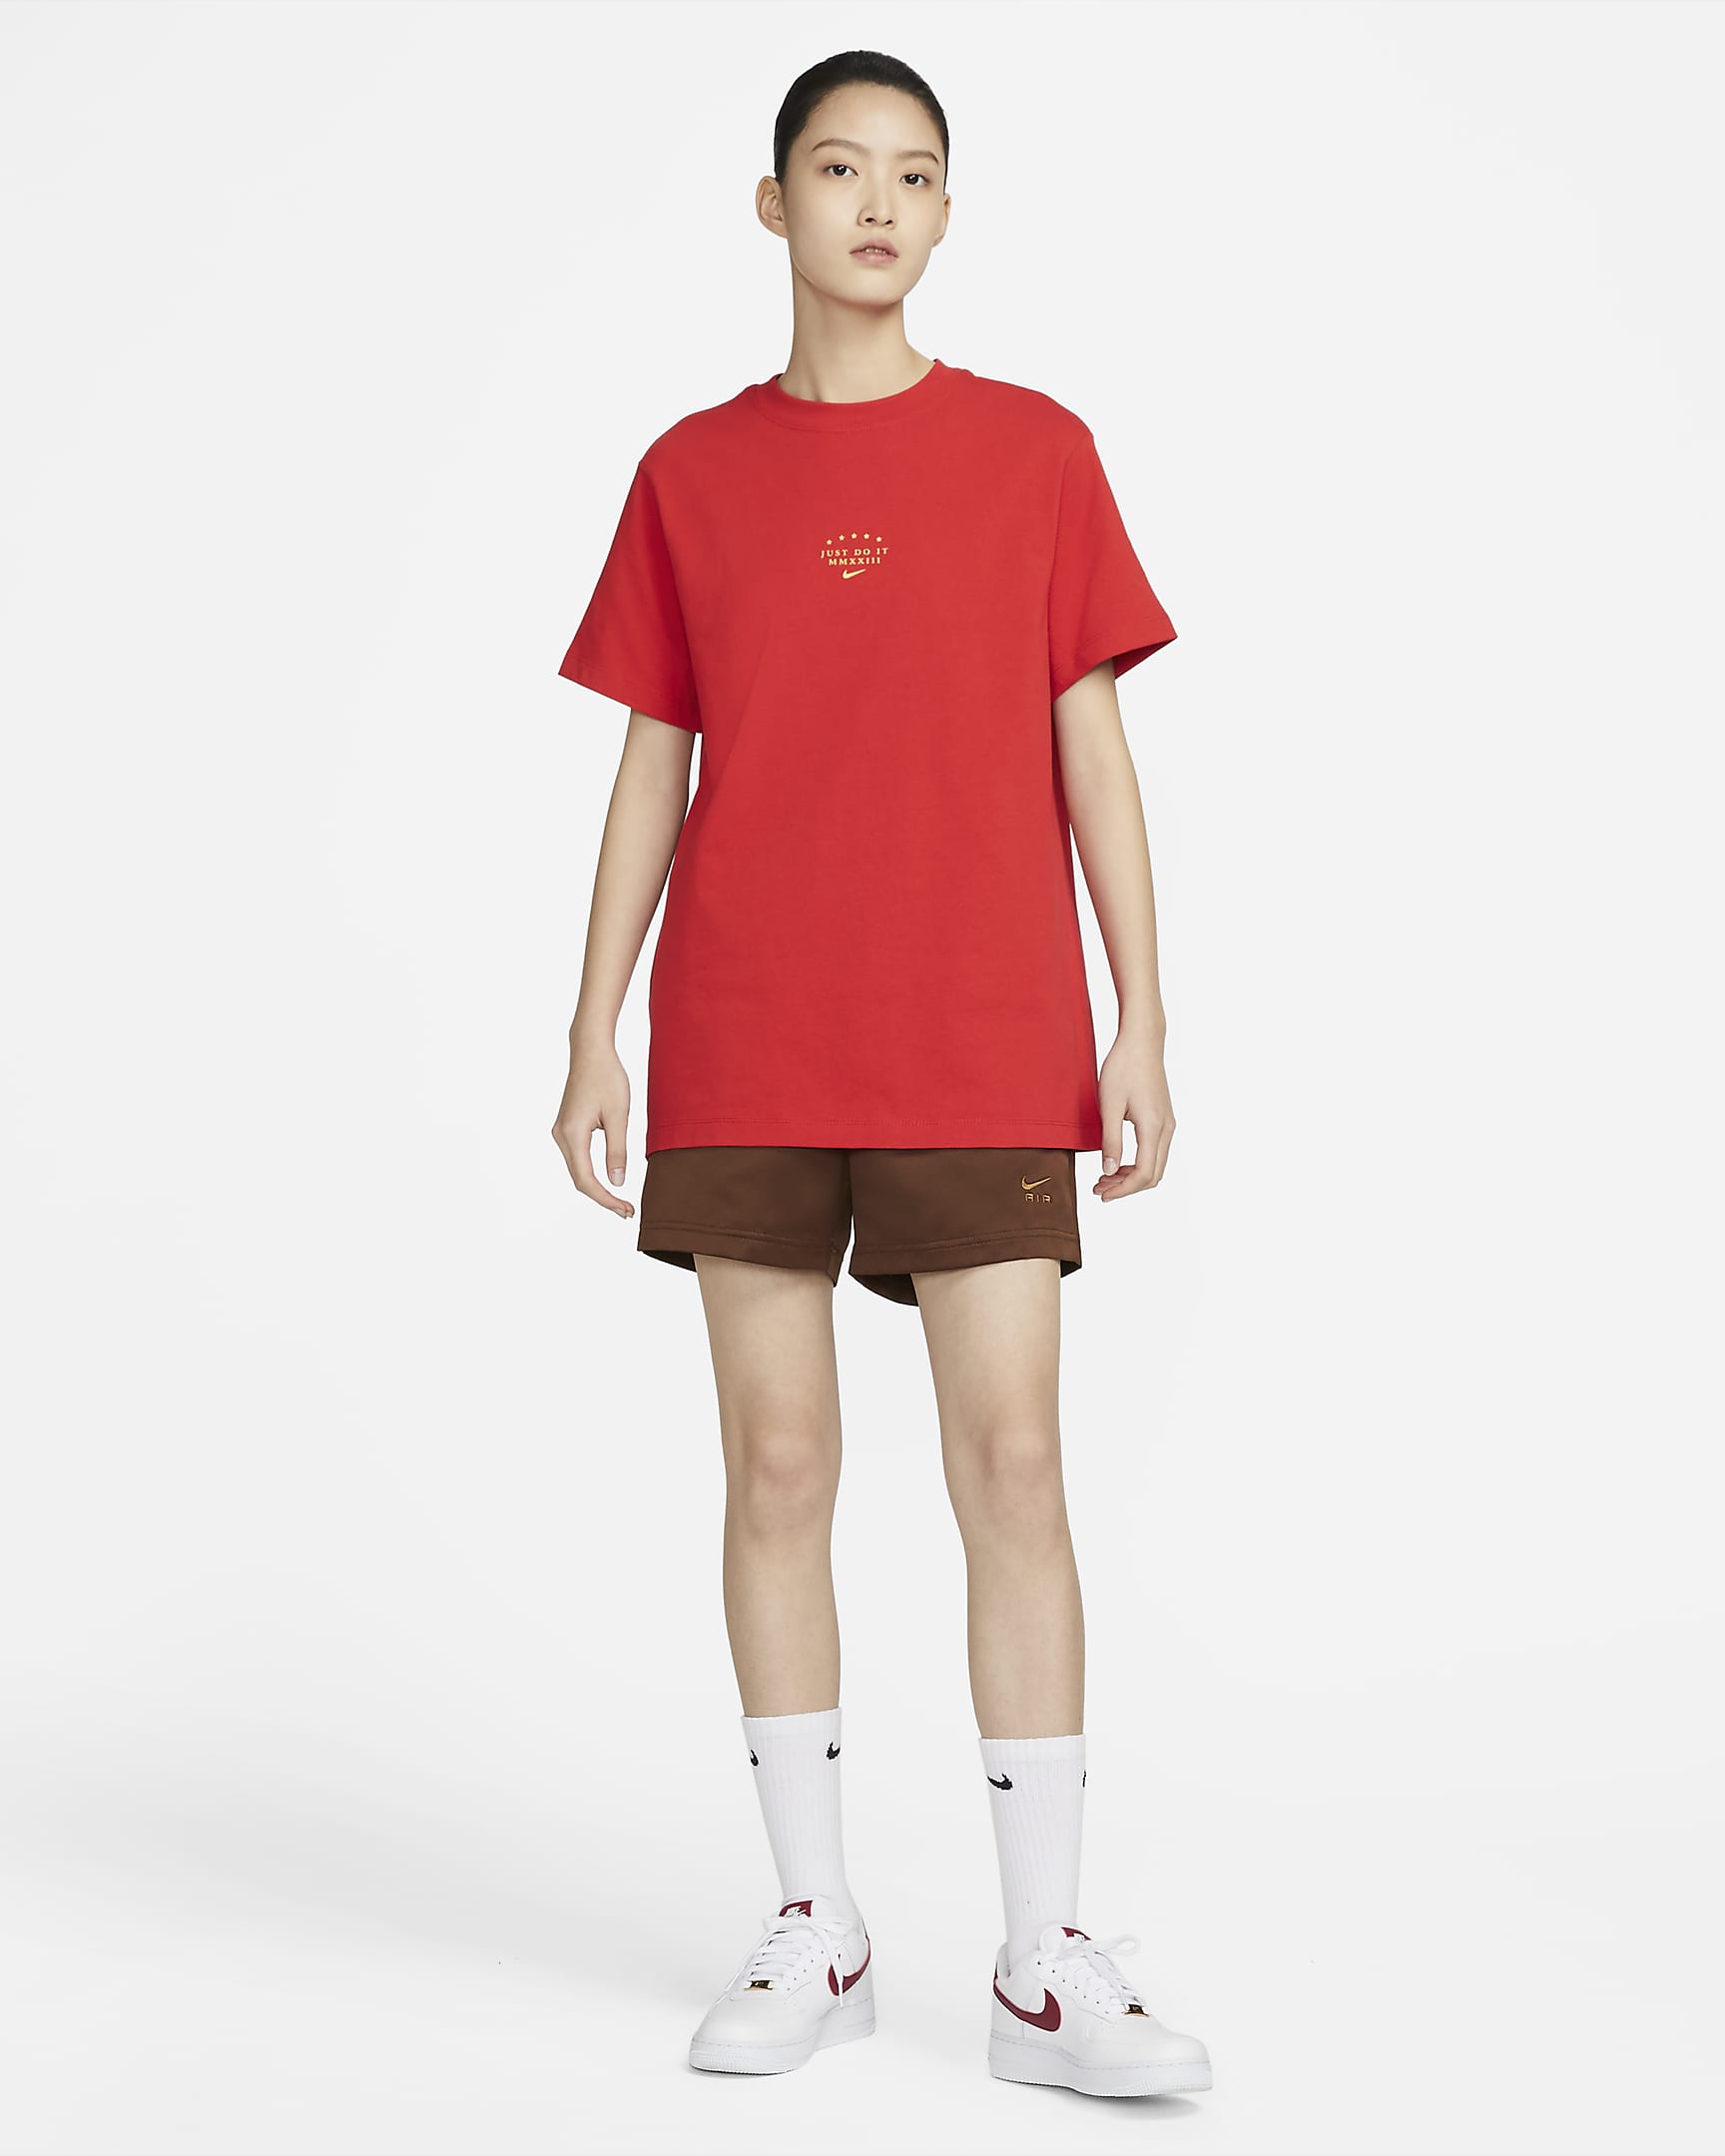 Nike Sportswear Women's Short-sleeve T-shirt. Nike ID